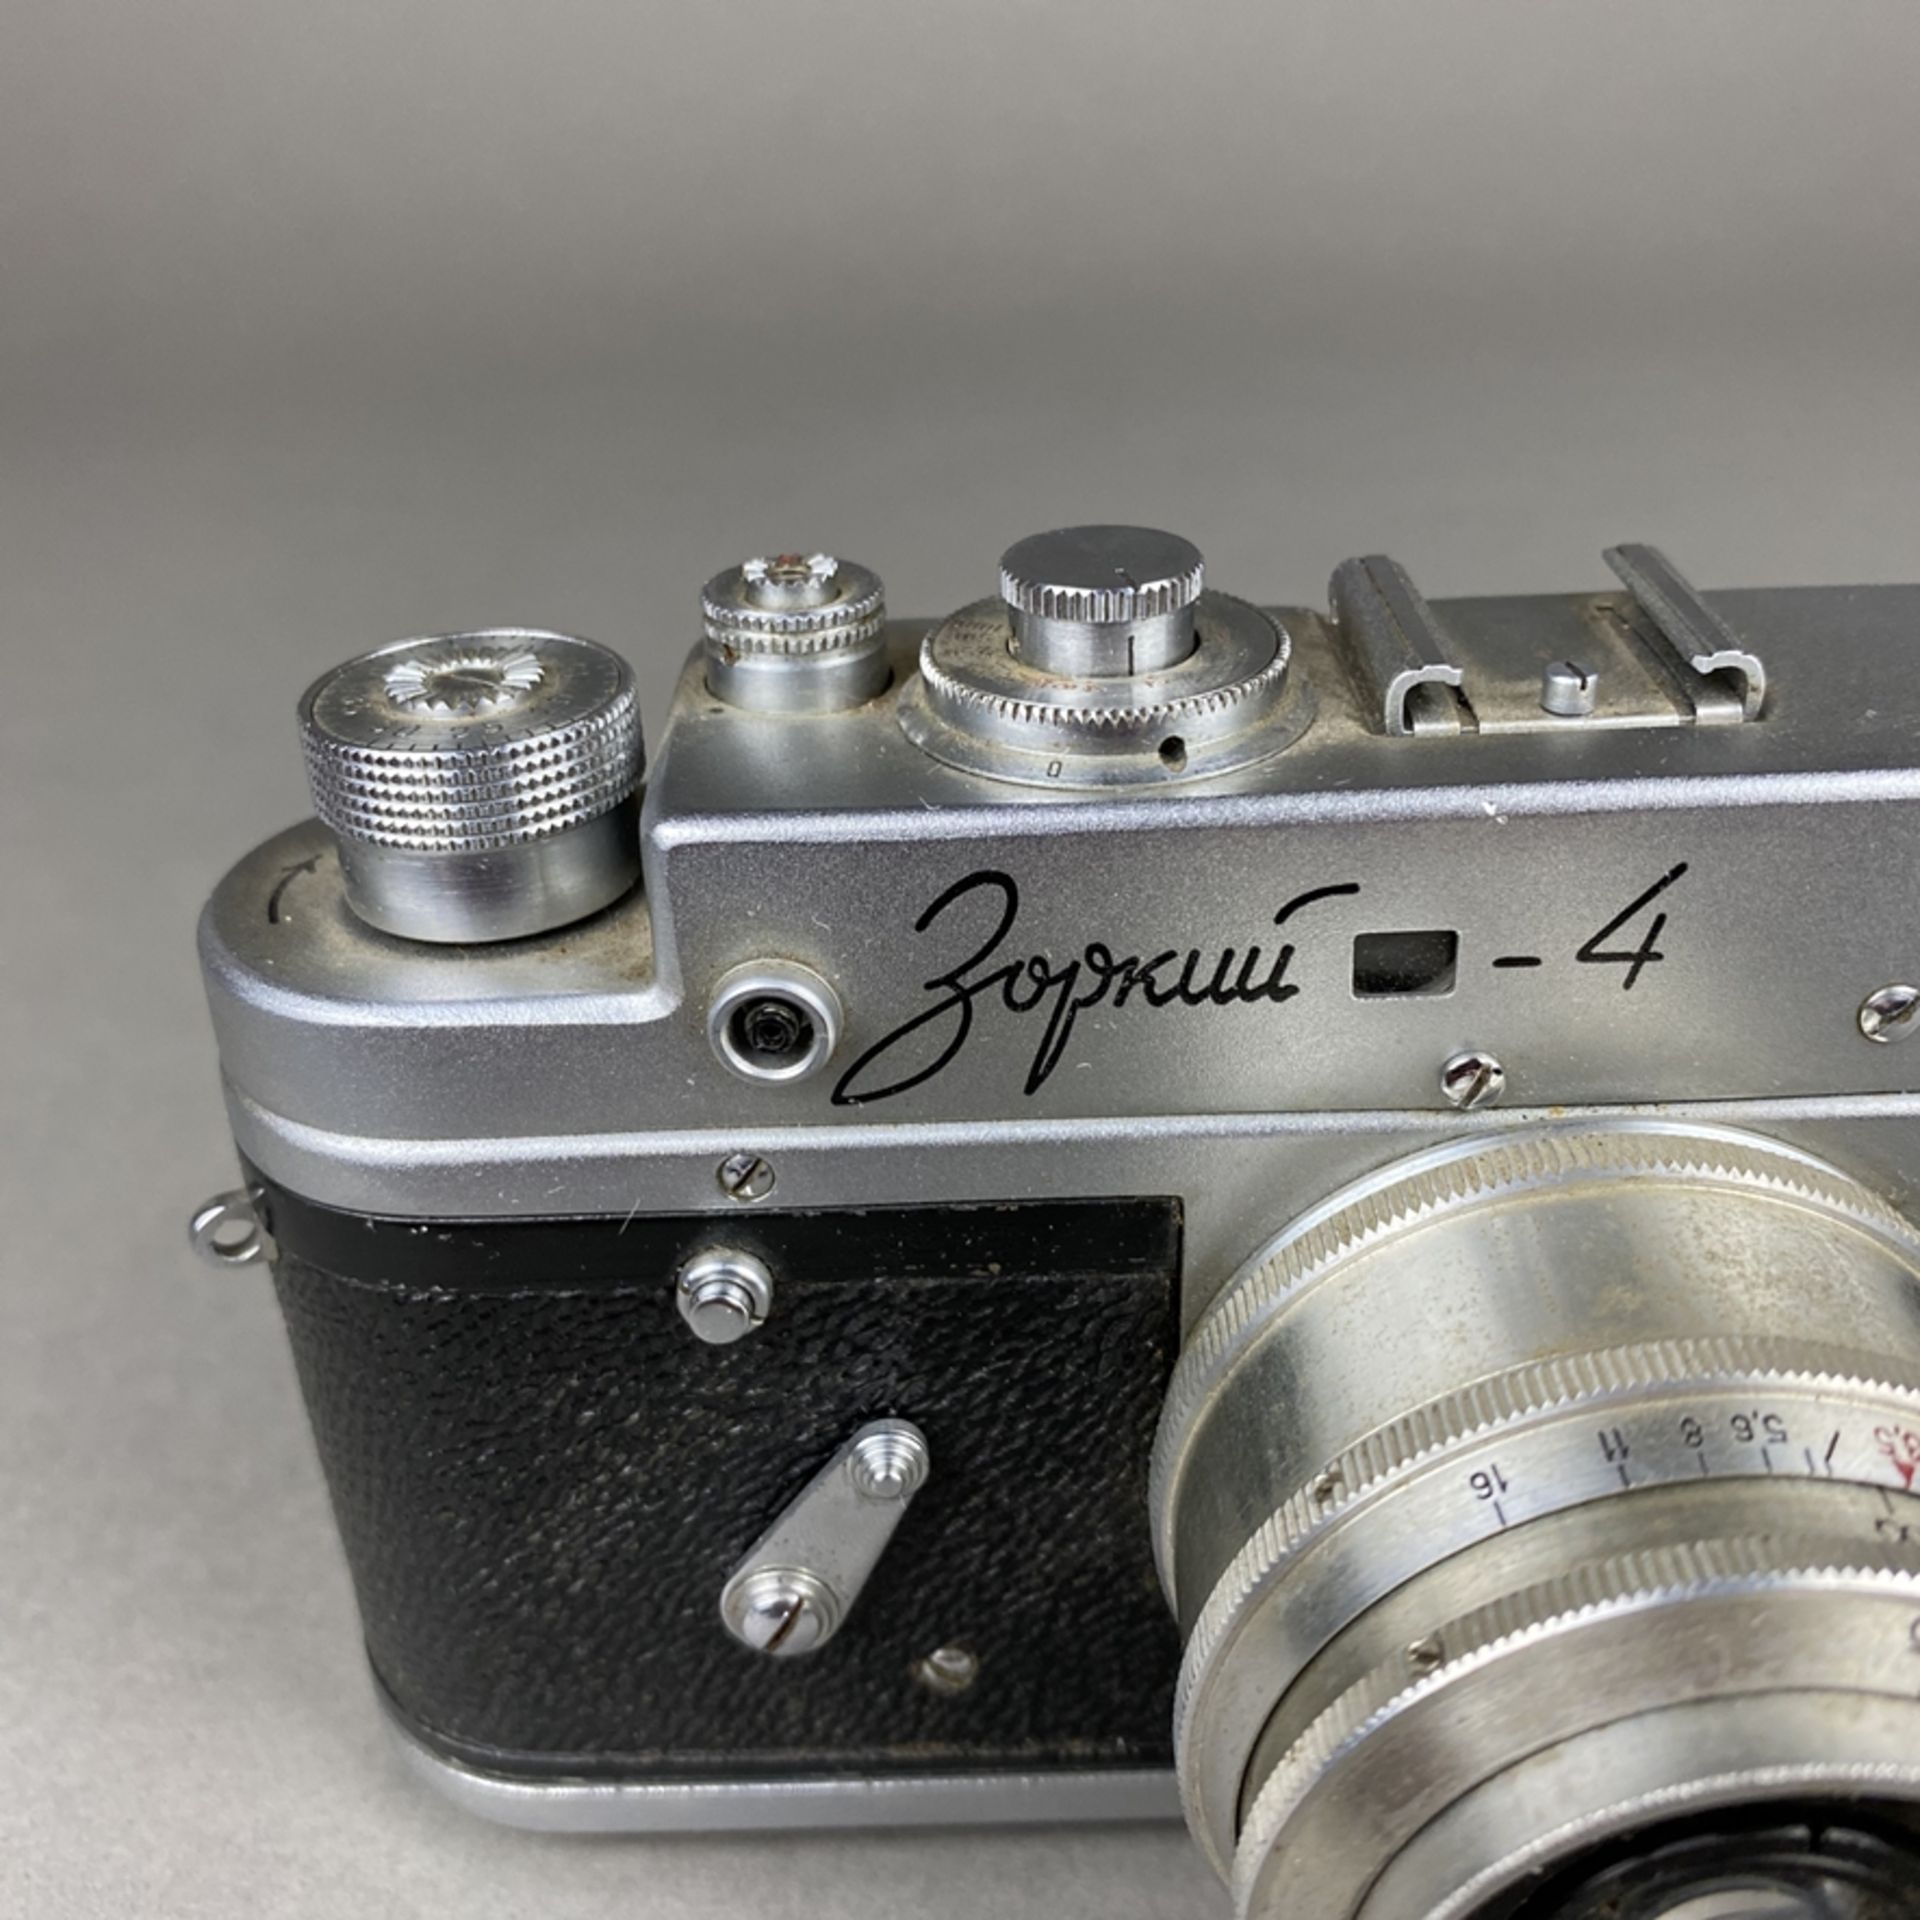 Zorki 4 - sowjetische Kleinbild-Sucherkamera, Gehäusenr. 65677066, Objektiv Industar 50, 1:35, F= - Bild 3 aus 6